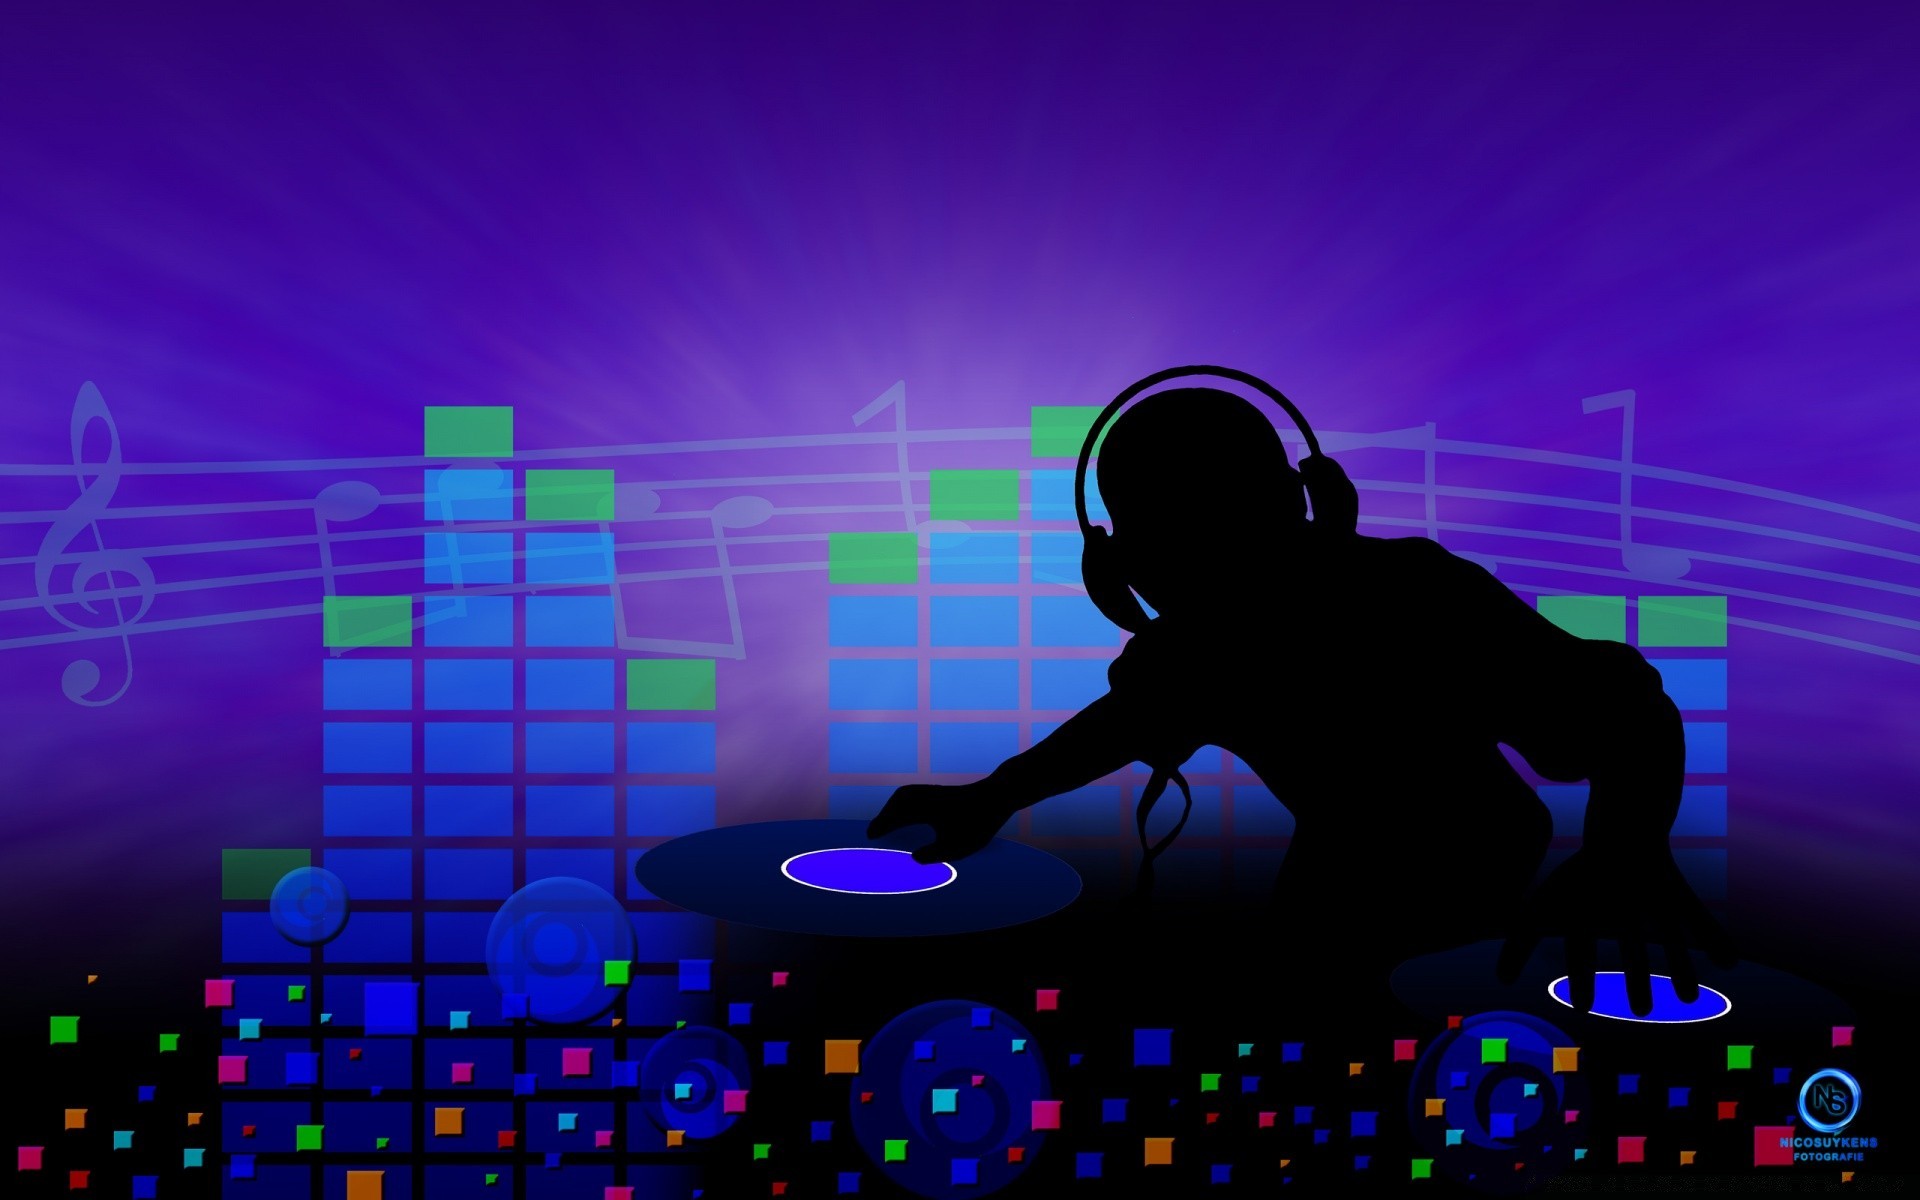 музыка участник звук концерт клуб диско ночная жизнь рабочего стола производительности яркий иллюстрация